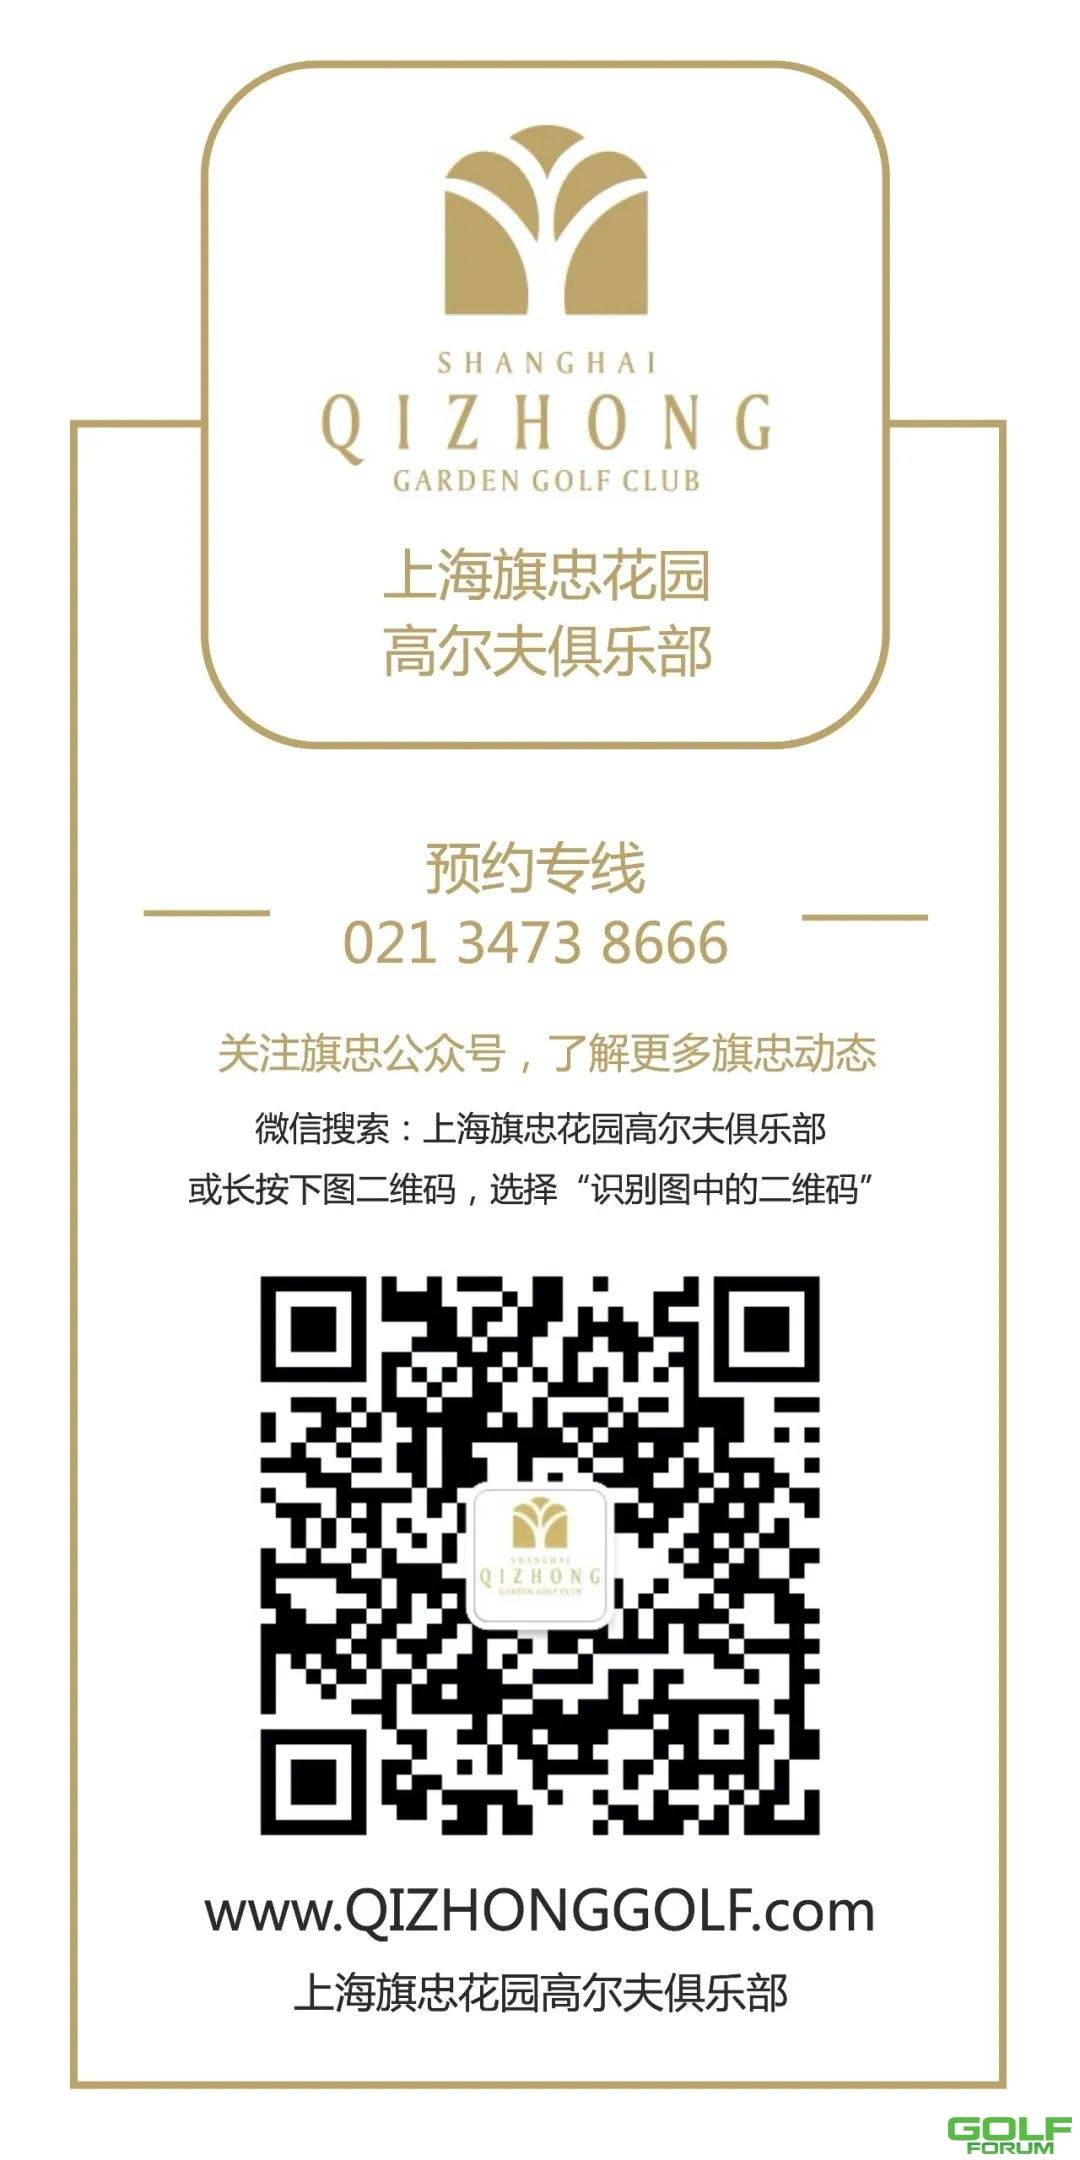 【报名】MIGA（旗忠）上海中级&高级技术营启动招募